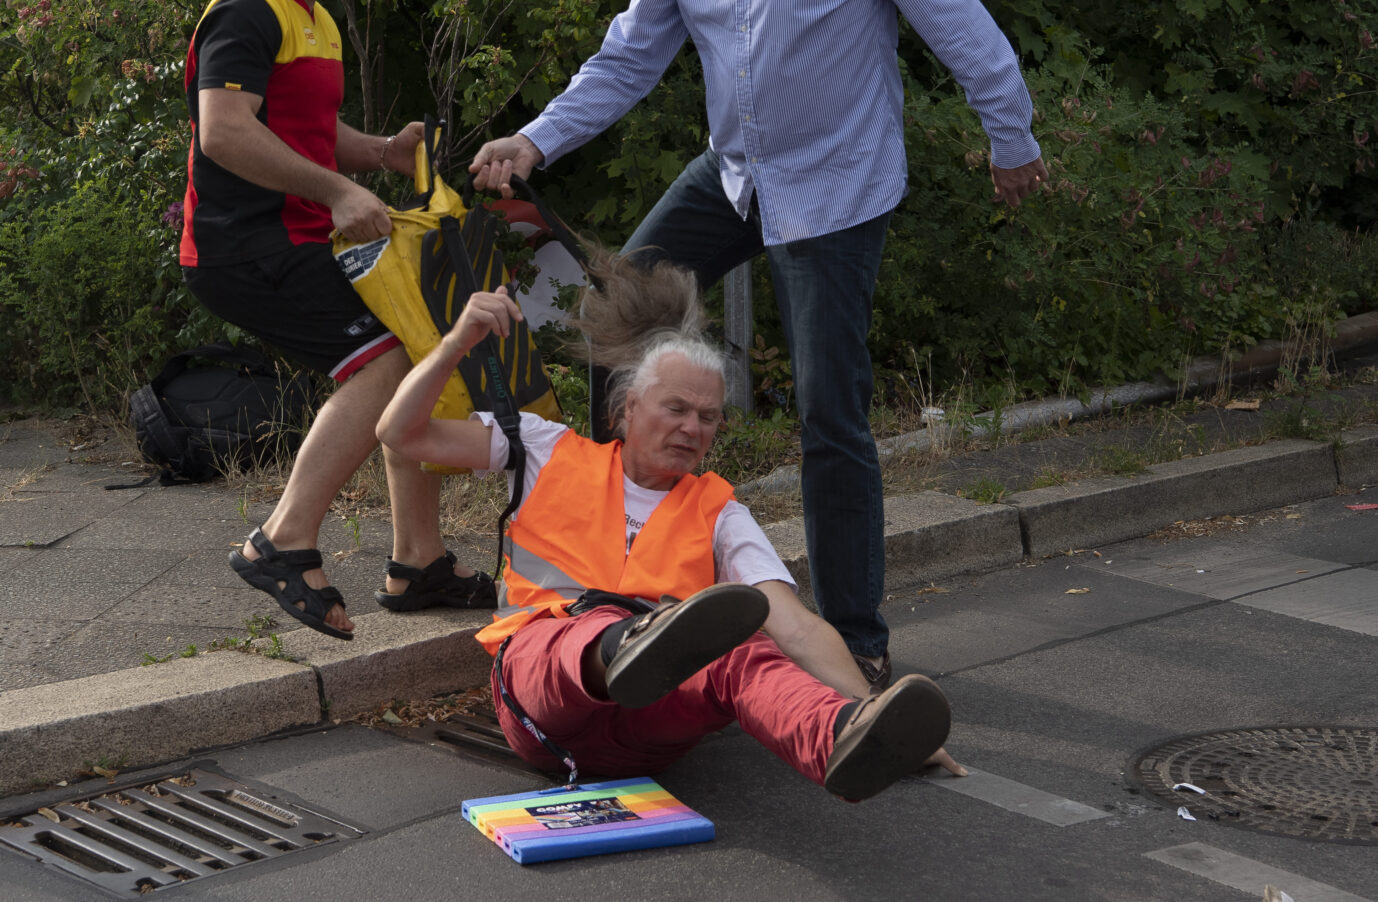 Der erste Verletzte. Ein Mitarbeiter der DHL und ein Autofahrer ziehen einen Demonstranten der Gruppe "Letzte Generation" von der Berliner Autobahn-Ausfahrt.